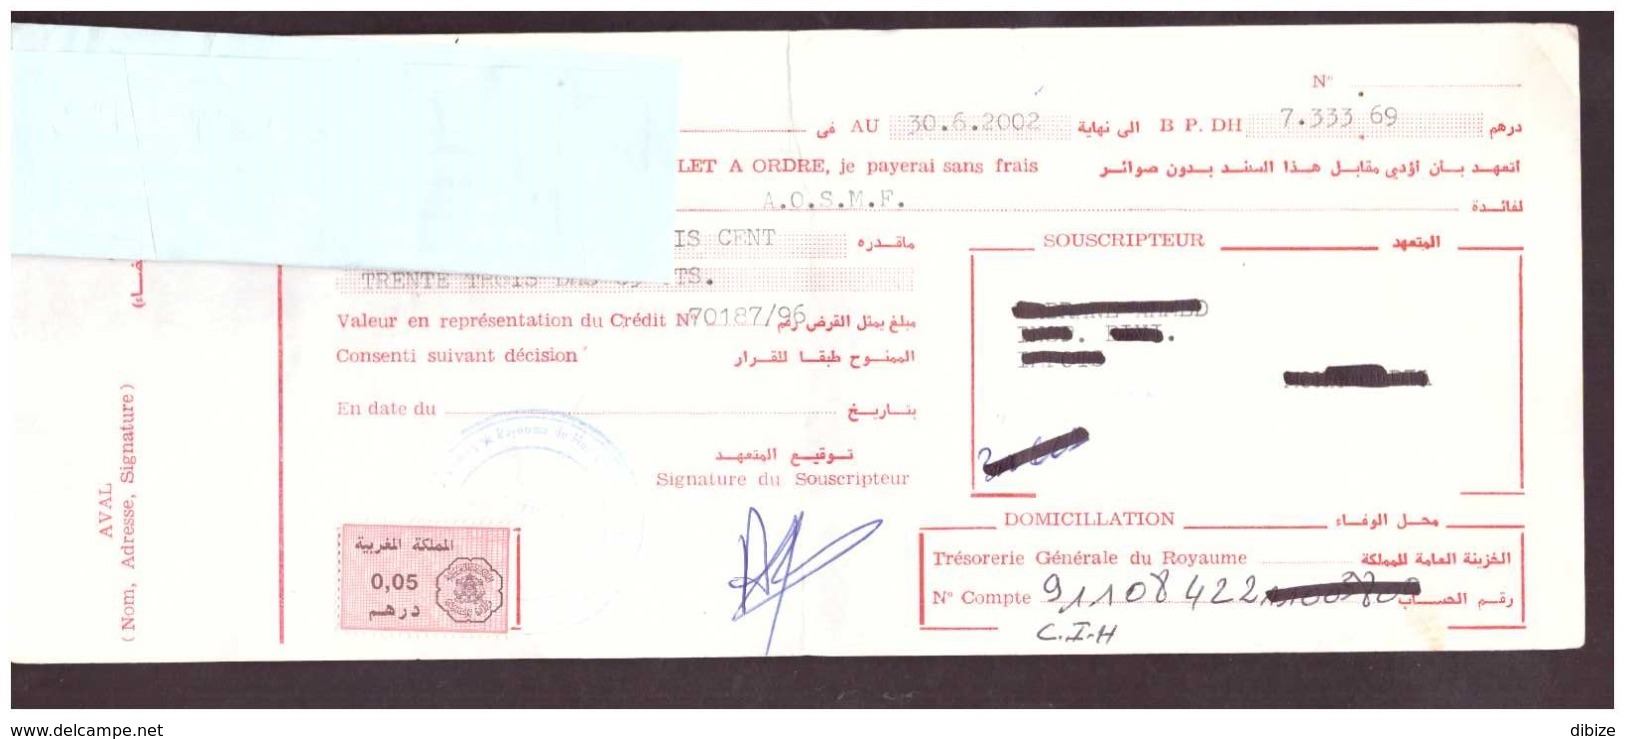 Maroc. Timbres Fiscaux De Quittance De 0.05 Et 0.10 Dirhams Sur 2 Billets à Ordre. 2 Traites 2000 Et 2002. - Maroc (1956-...)